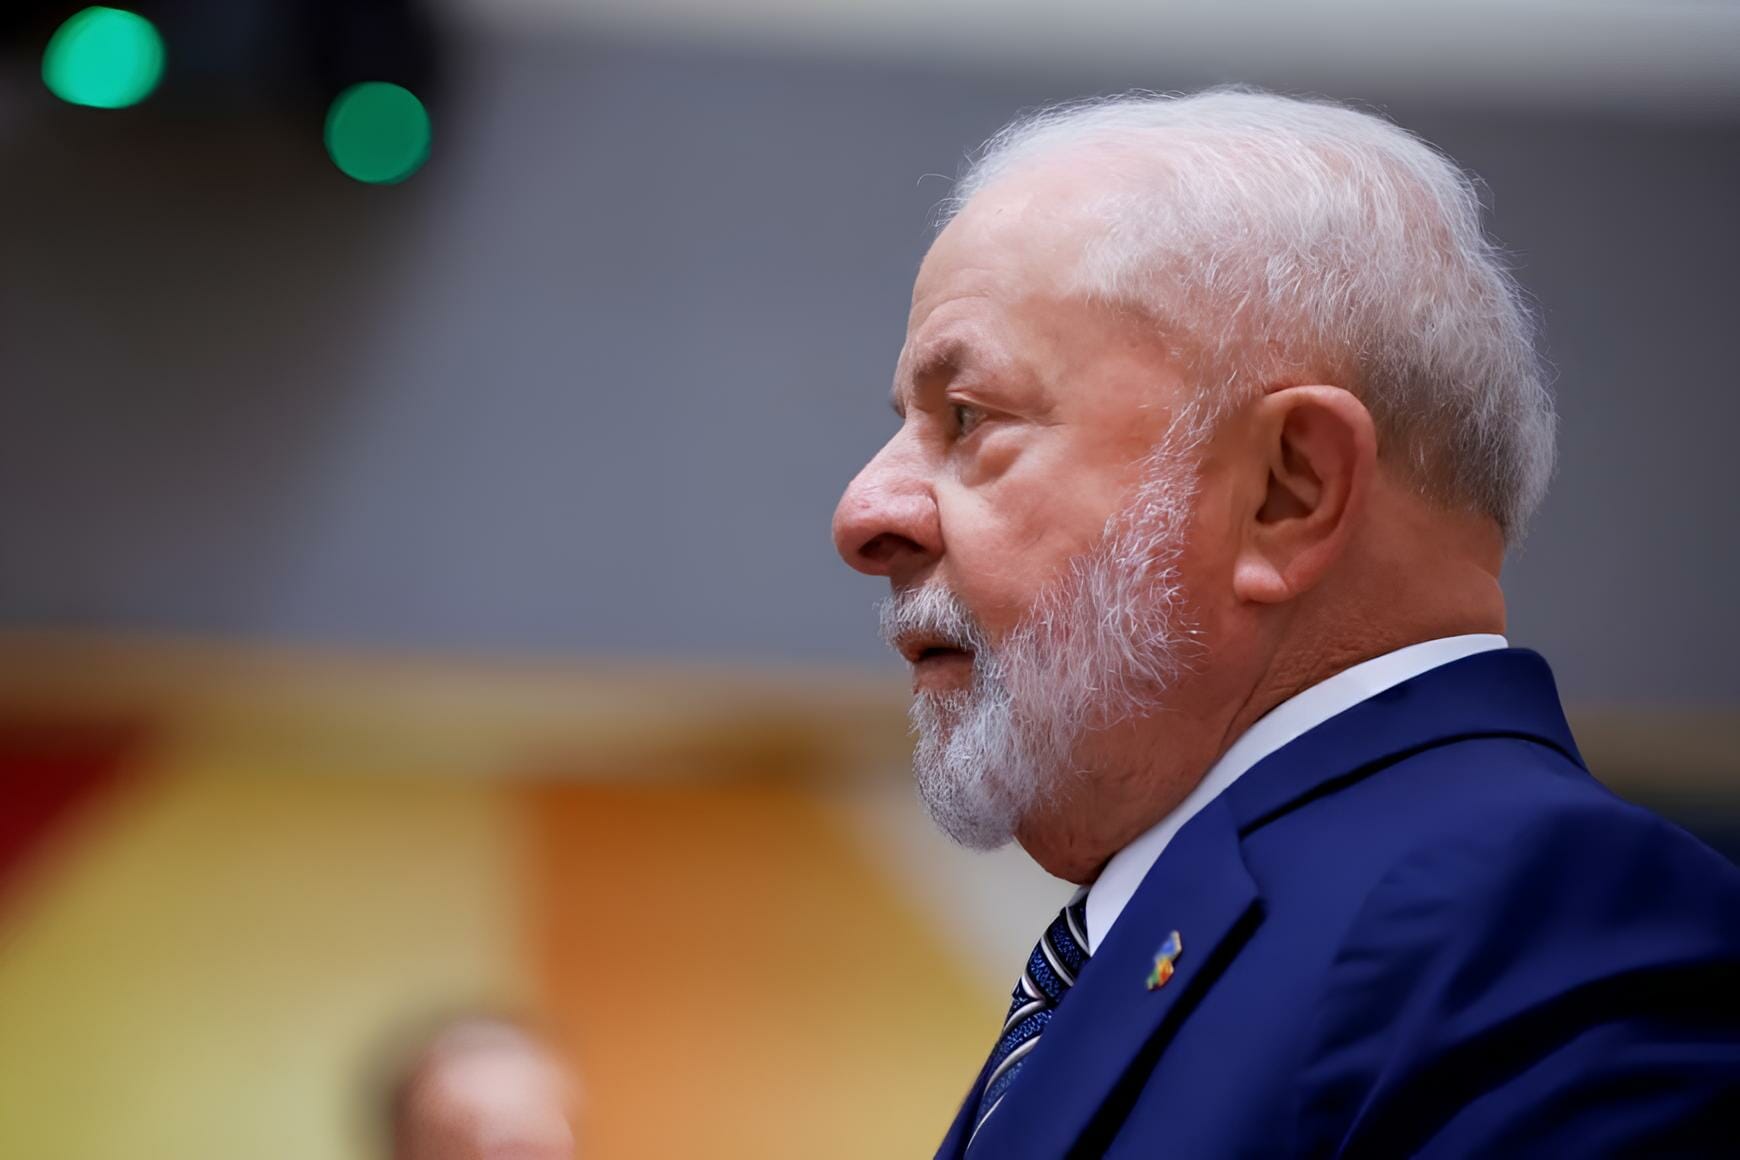 Lula Passará Por Cirurgia No Quadril: Entenda Os Detalhes